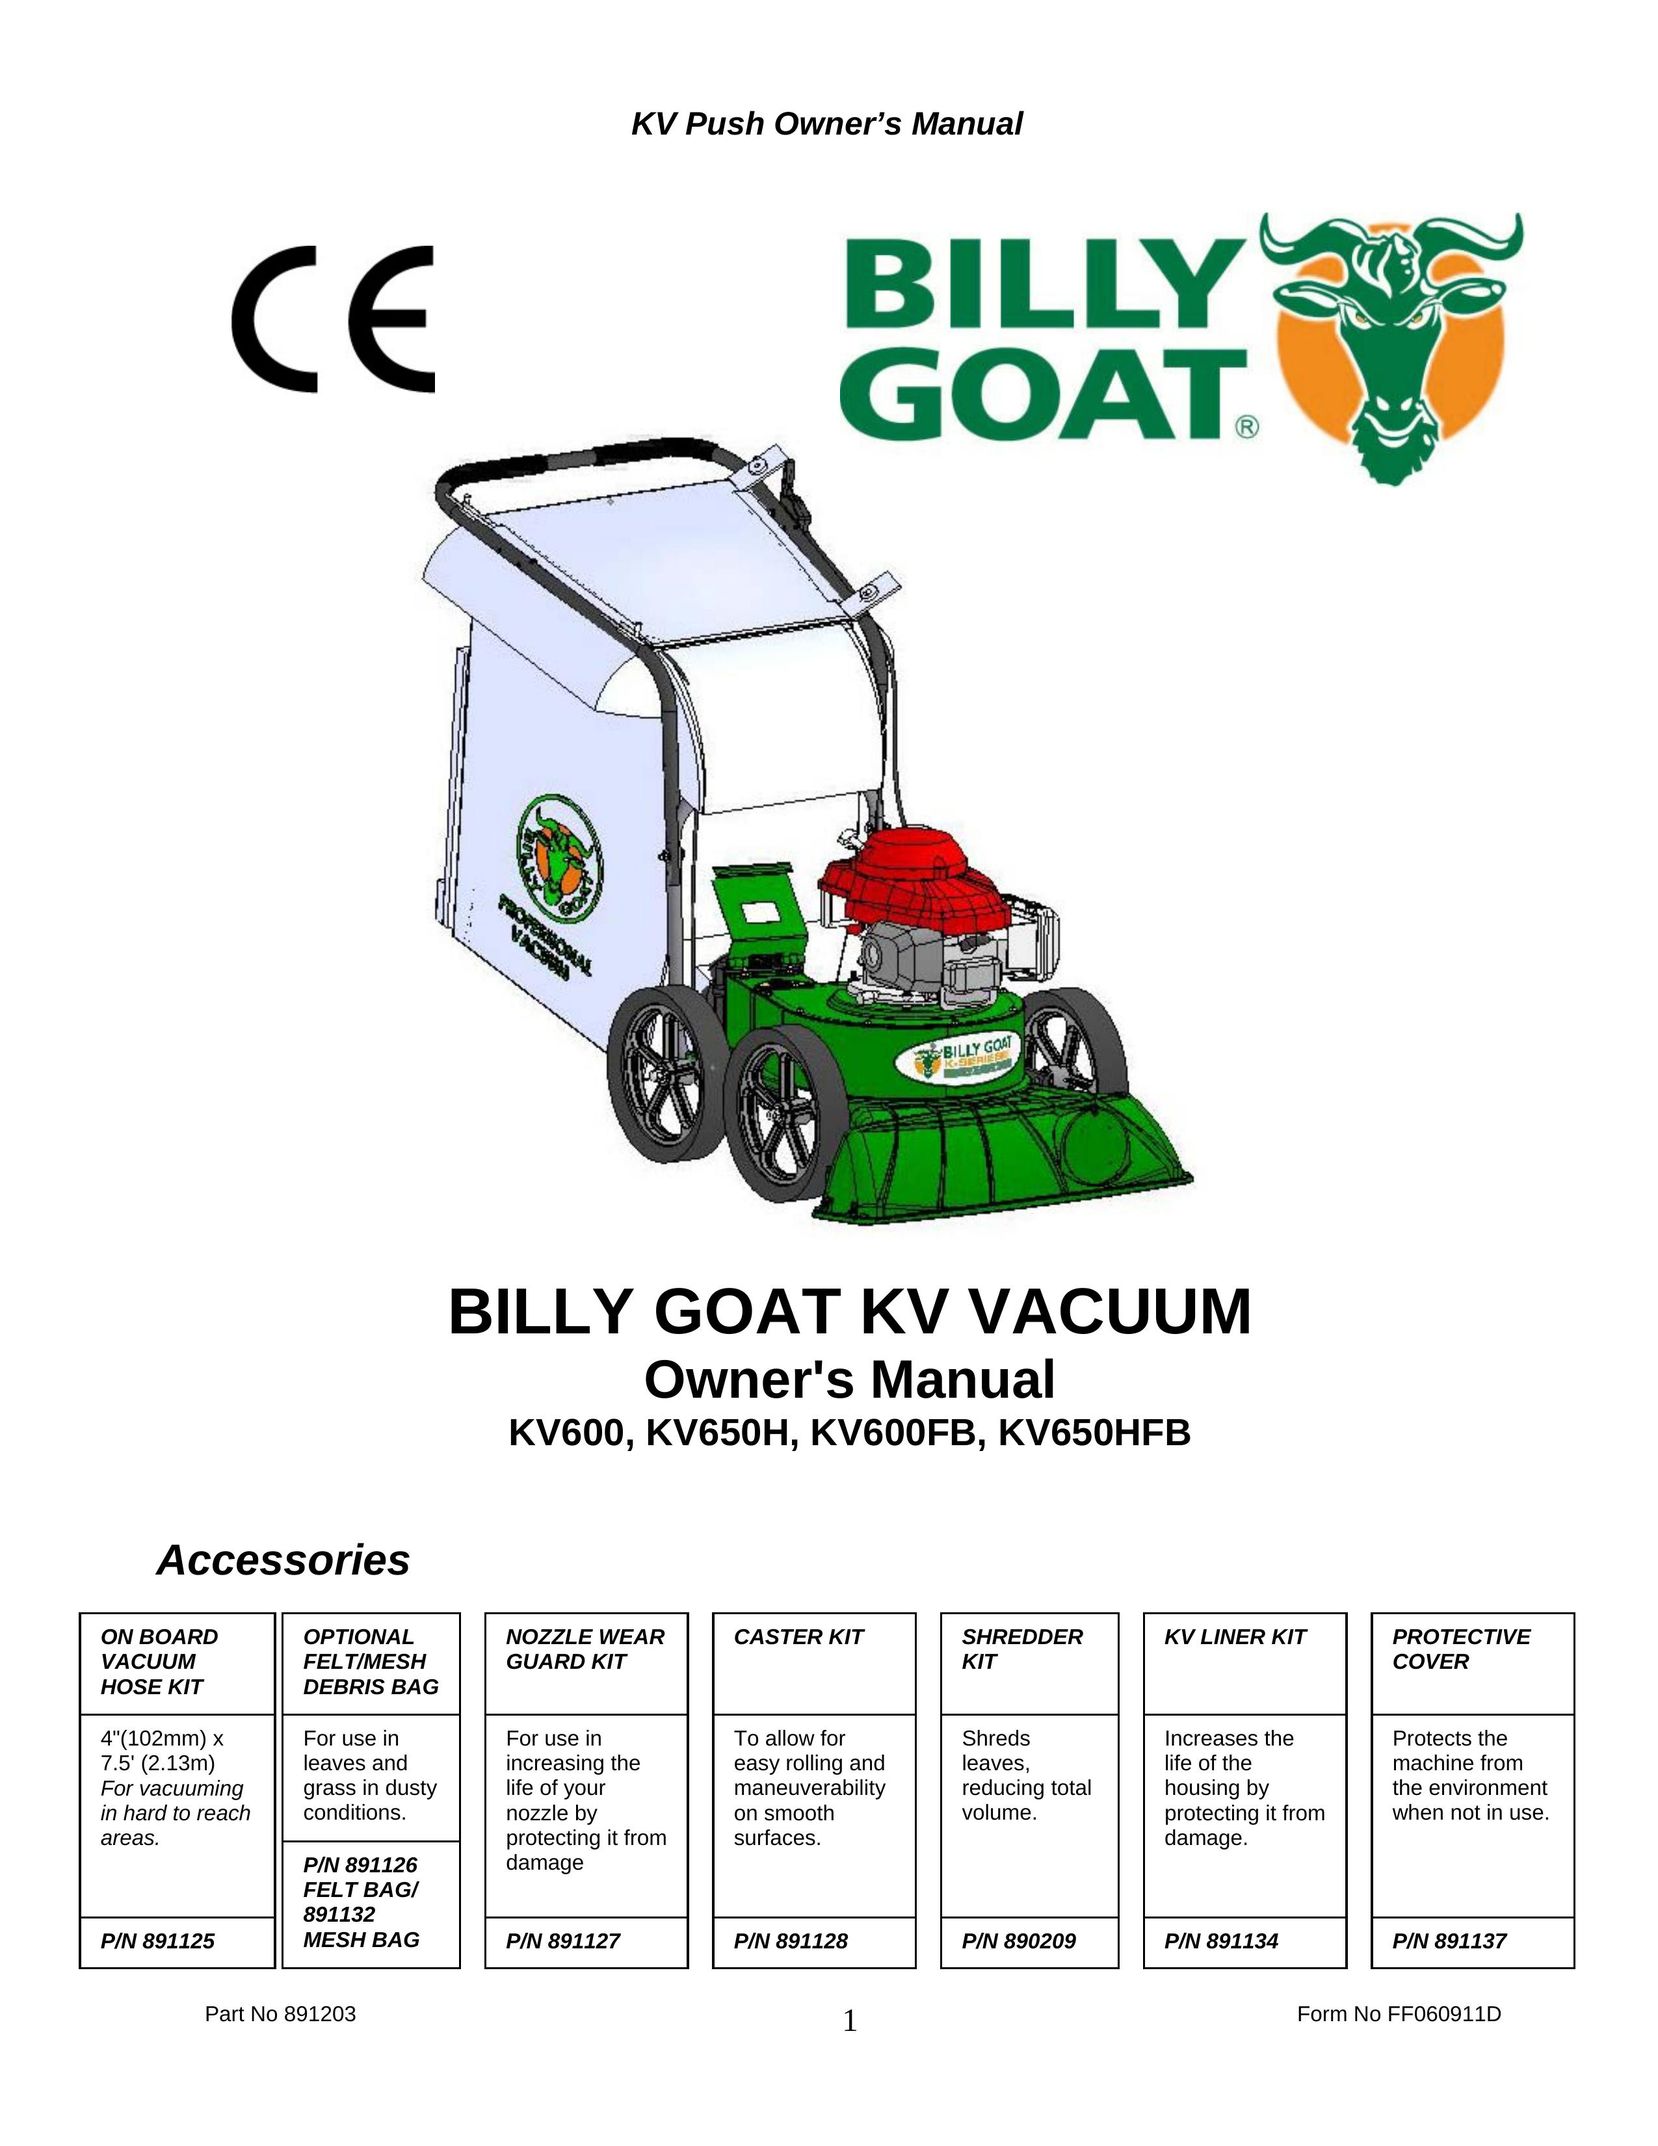 Billy Goat KV650HFB Vacuum Cleaner User Manual